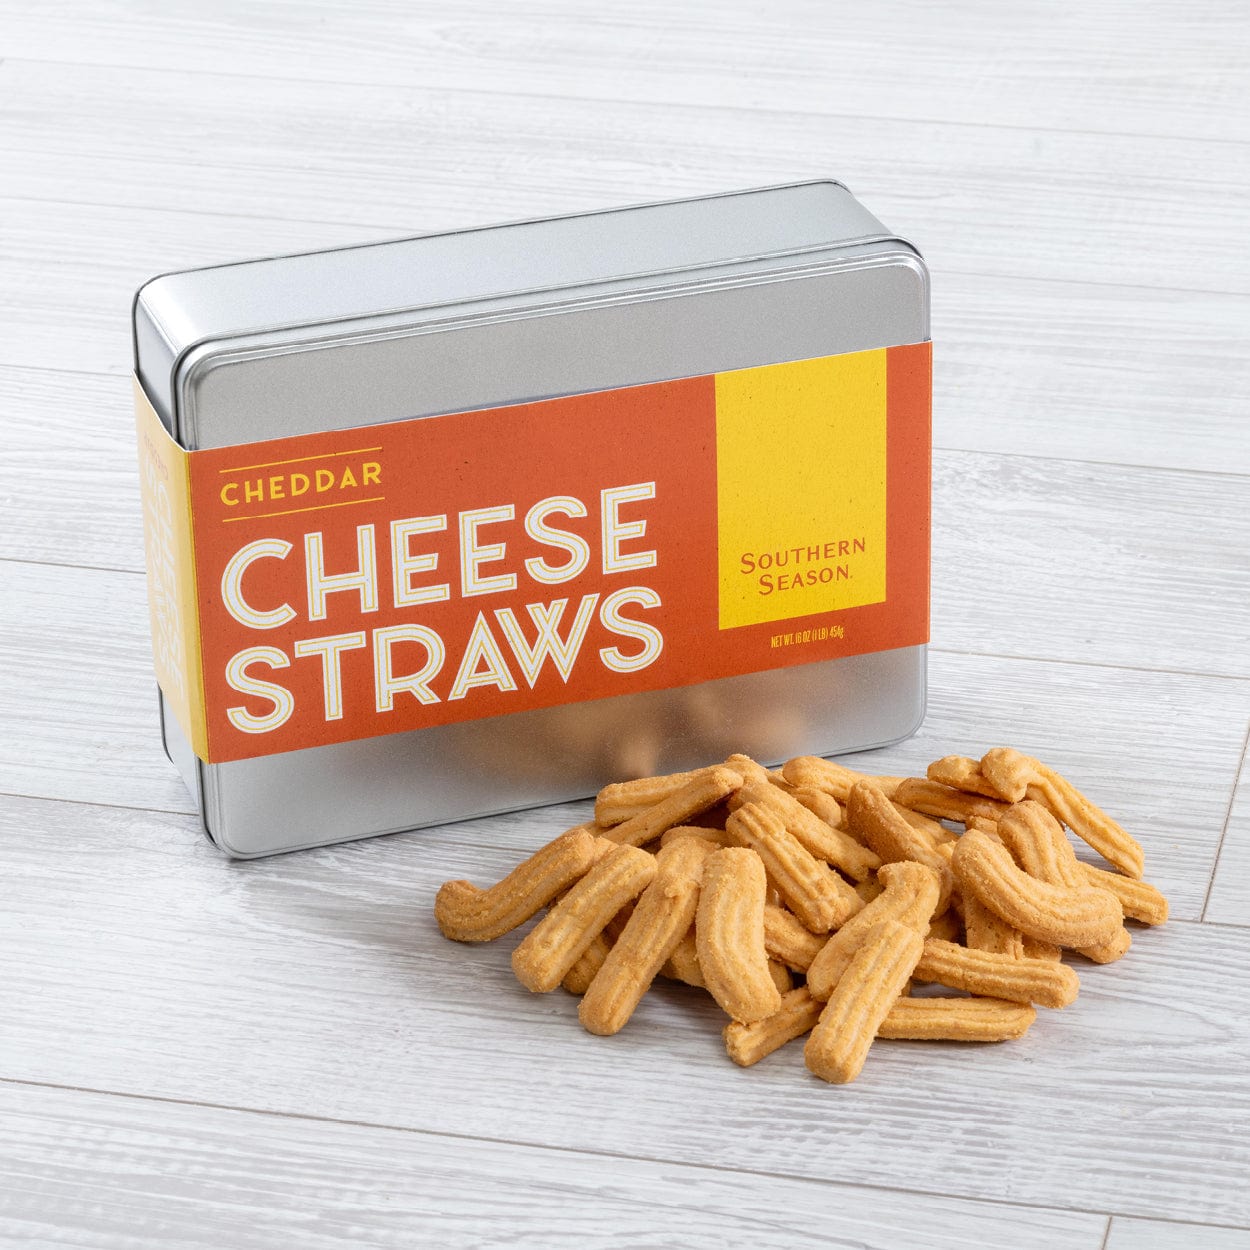 Southern Season Southern Season Cheddar Cheese Straws